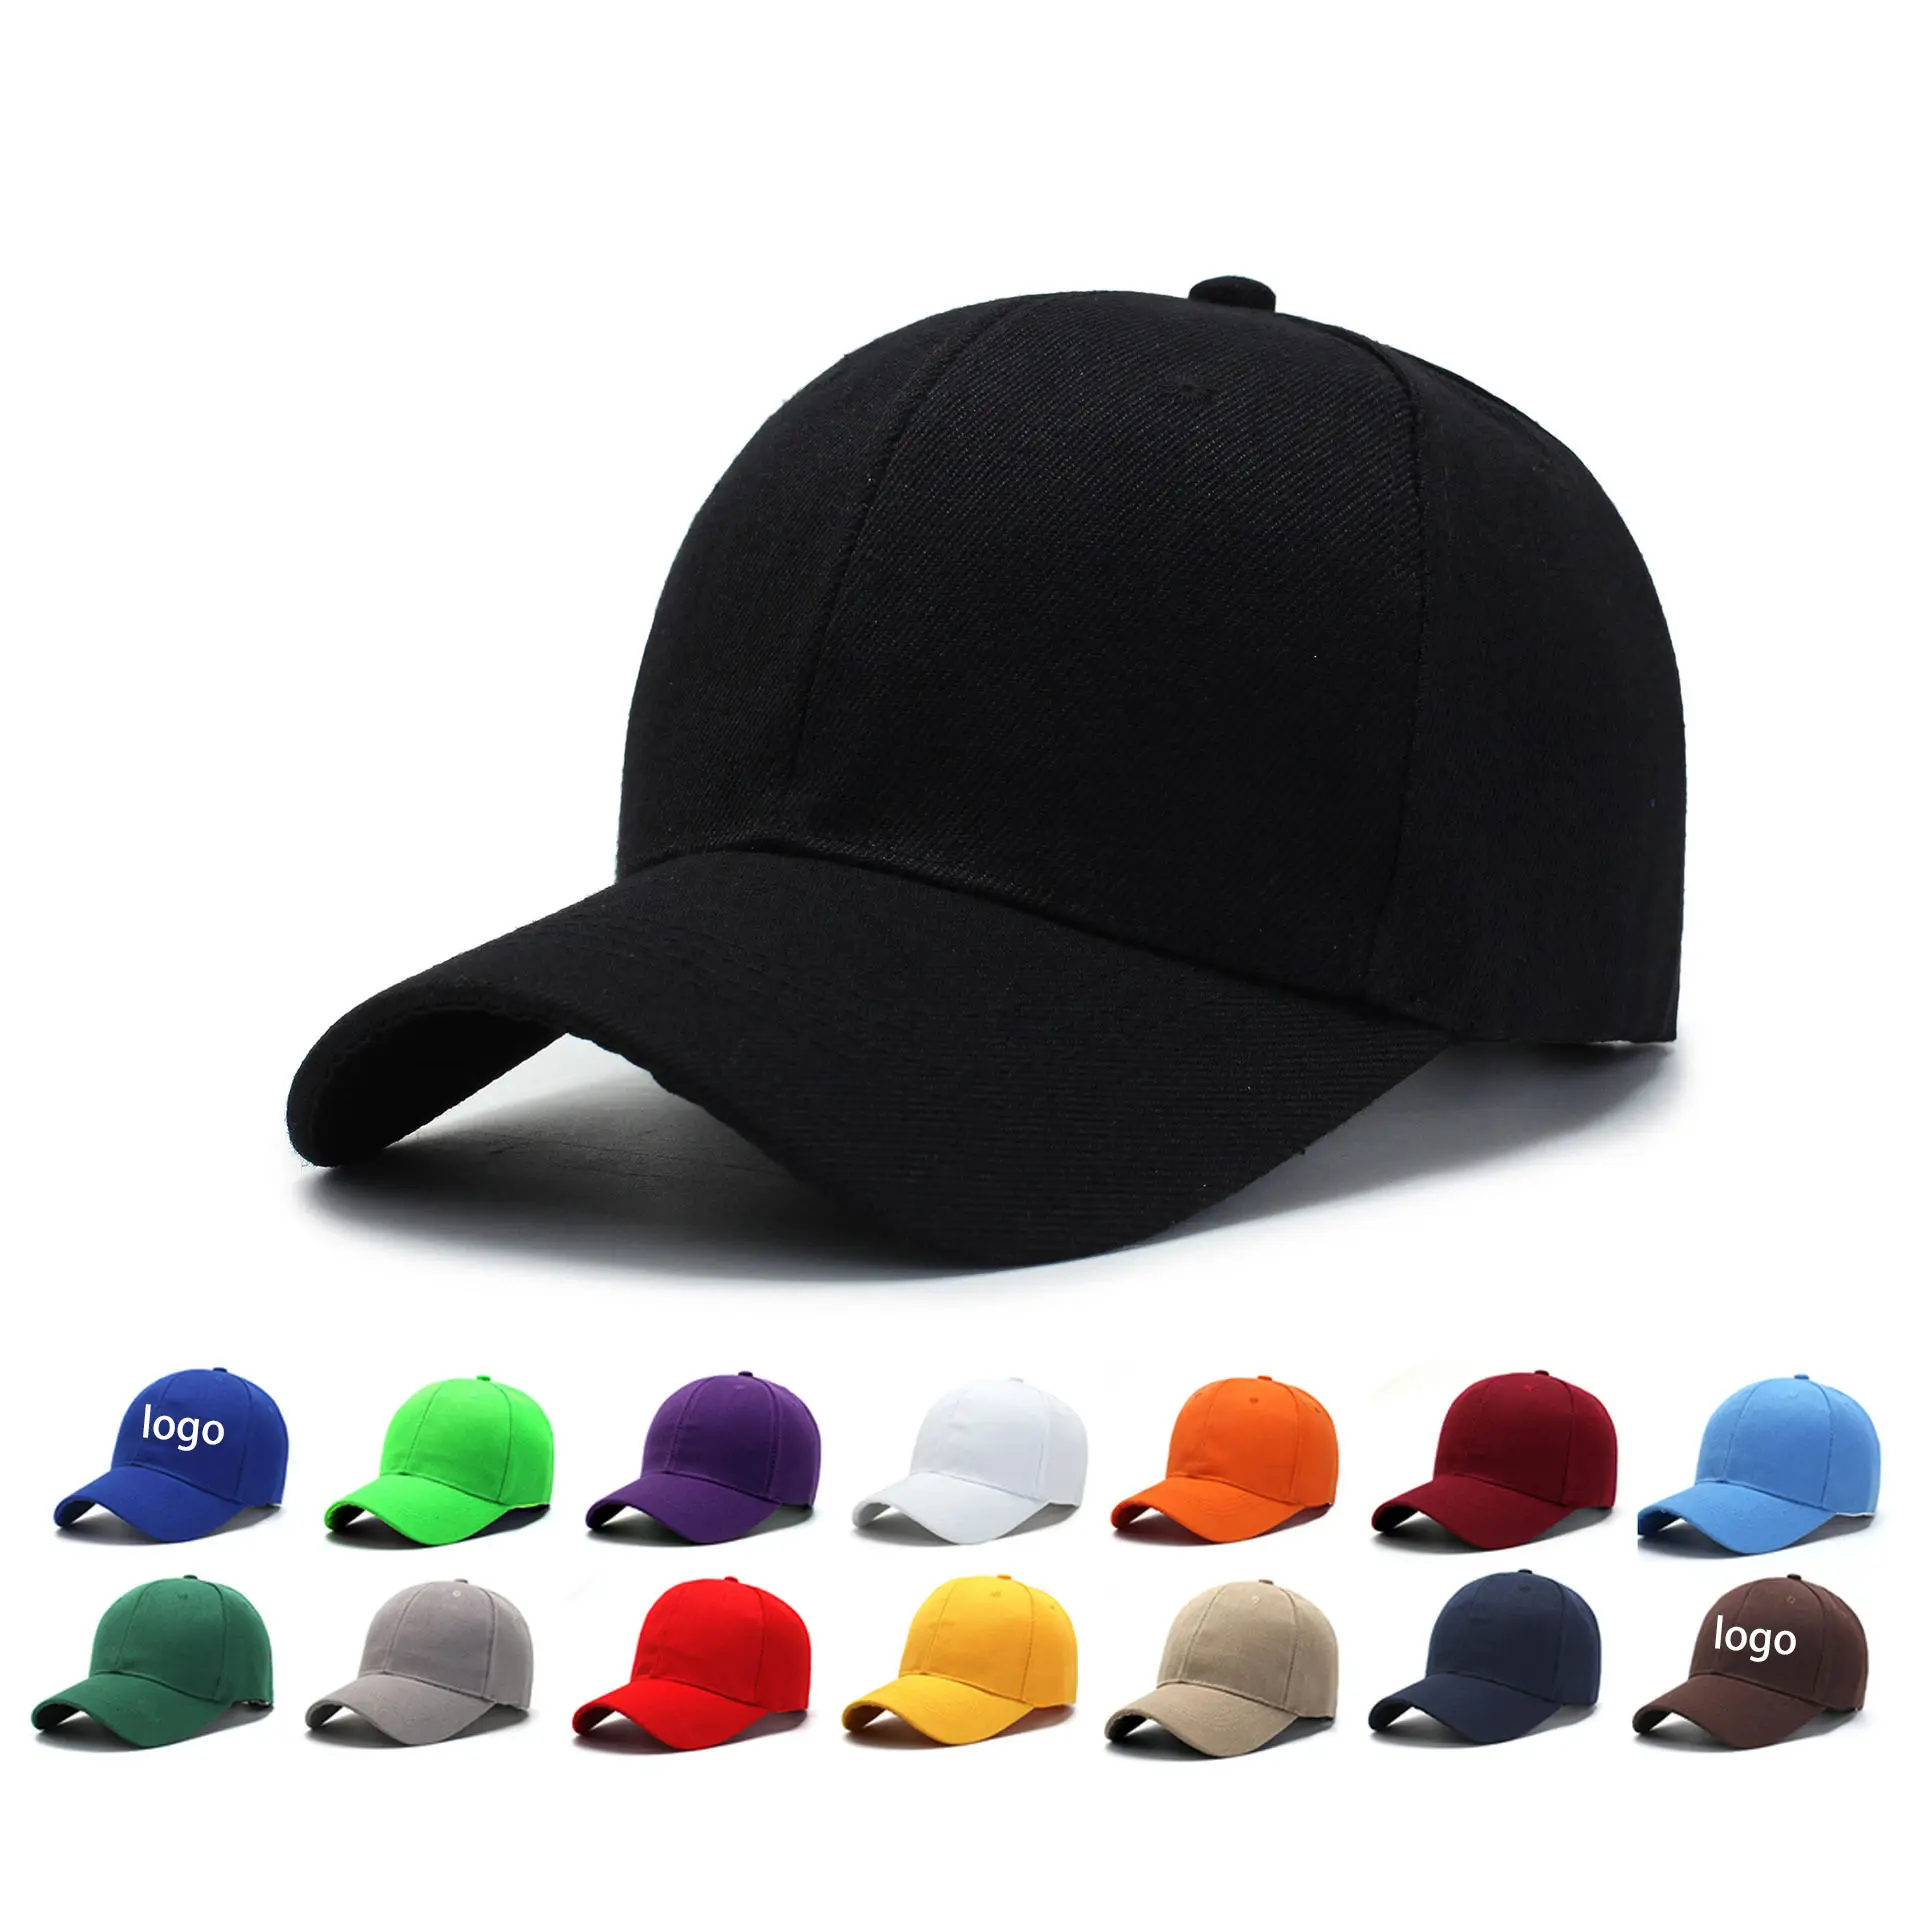 منخفضة موك أكثر اللون الجملة رخيصة مخصص 6 لوحة قبعة كرة سلة سادة مخصص شعار